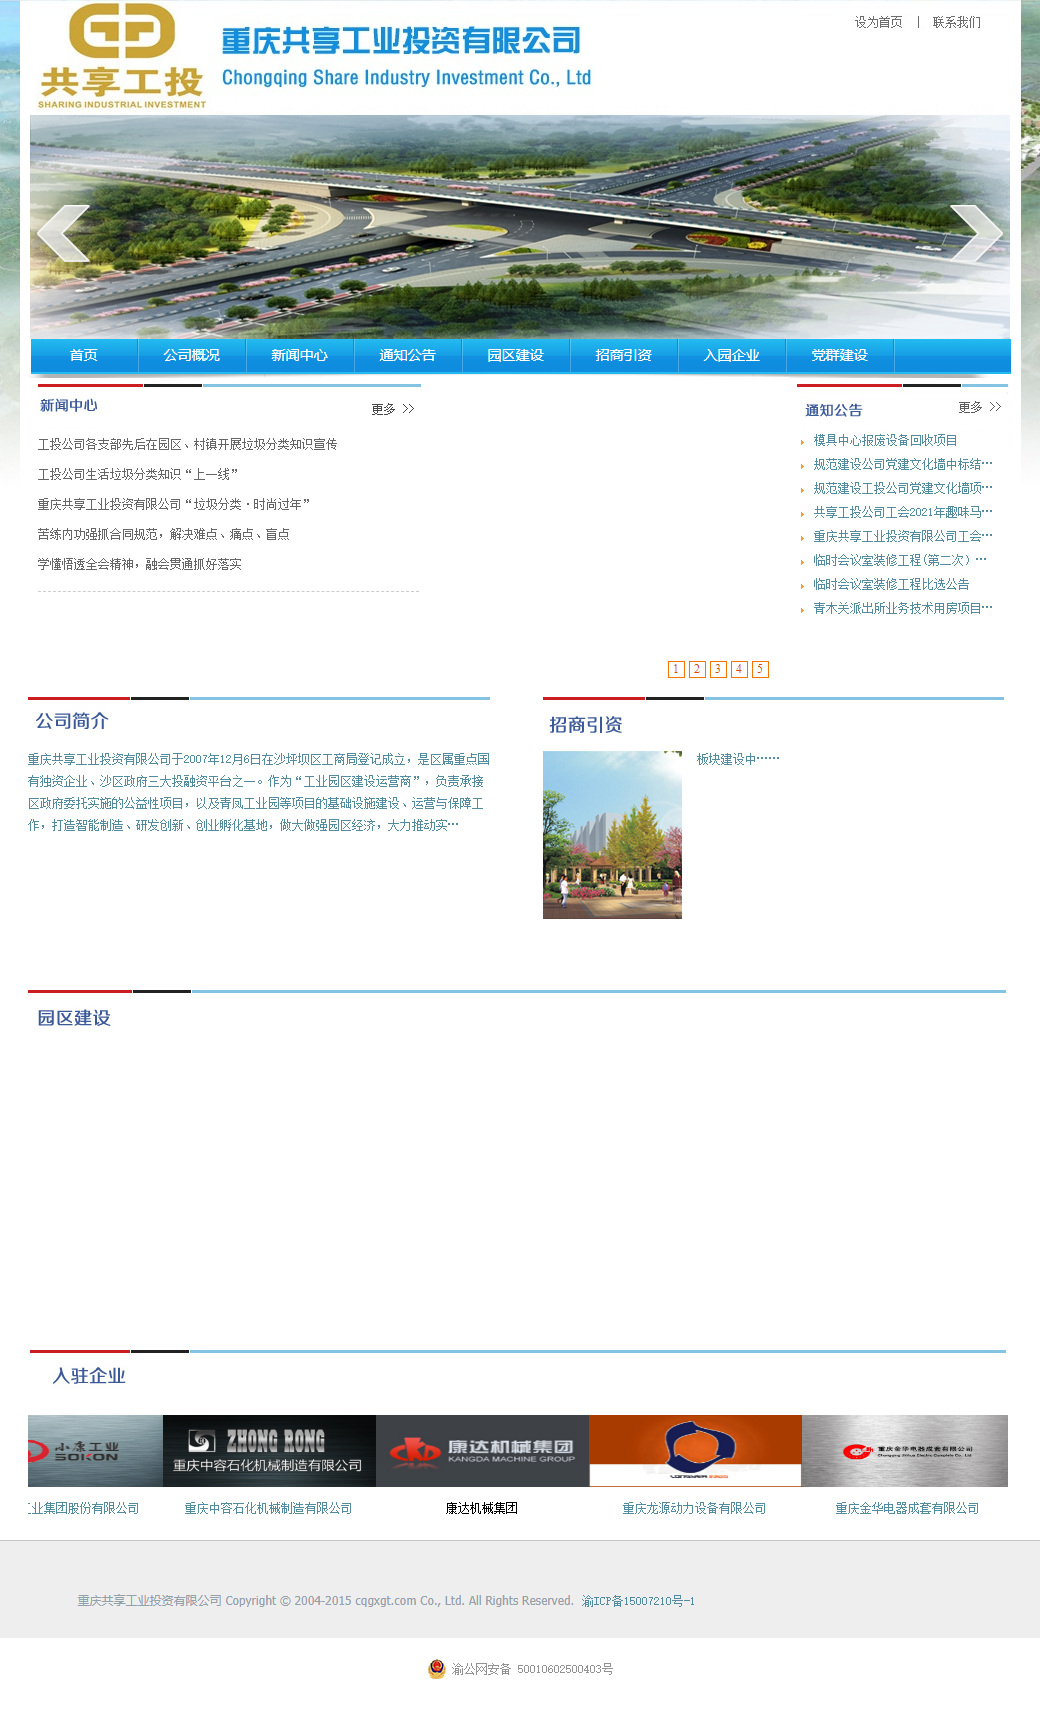 重庆共享工业投资有限公司网站案例